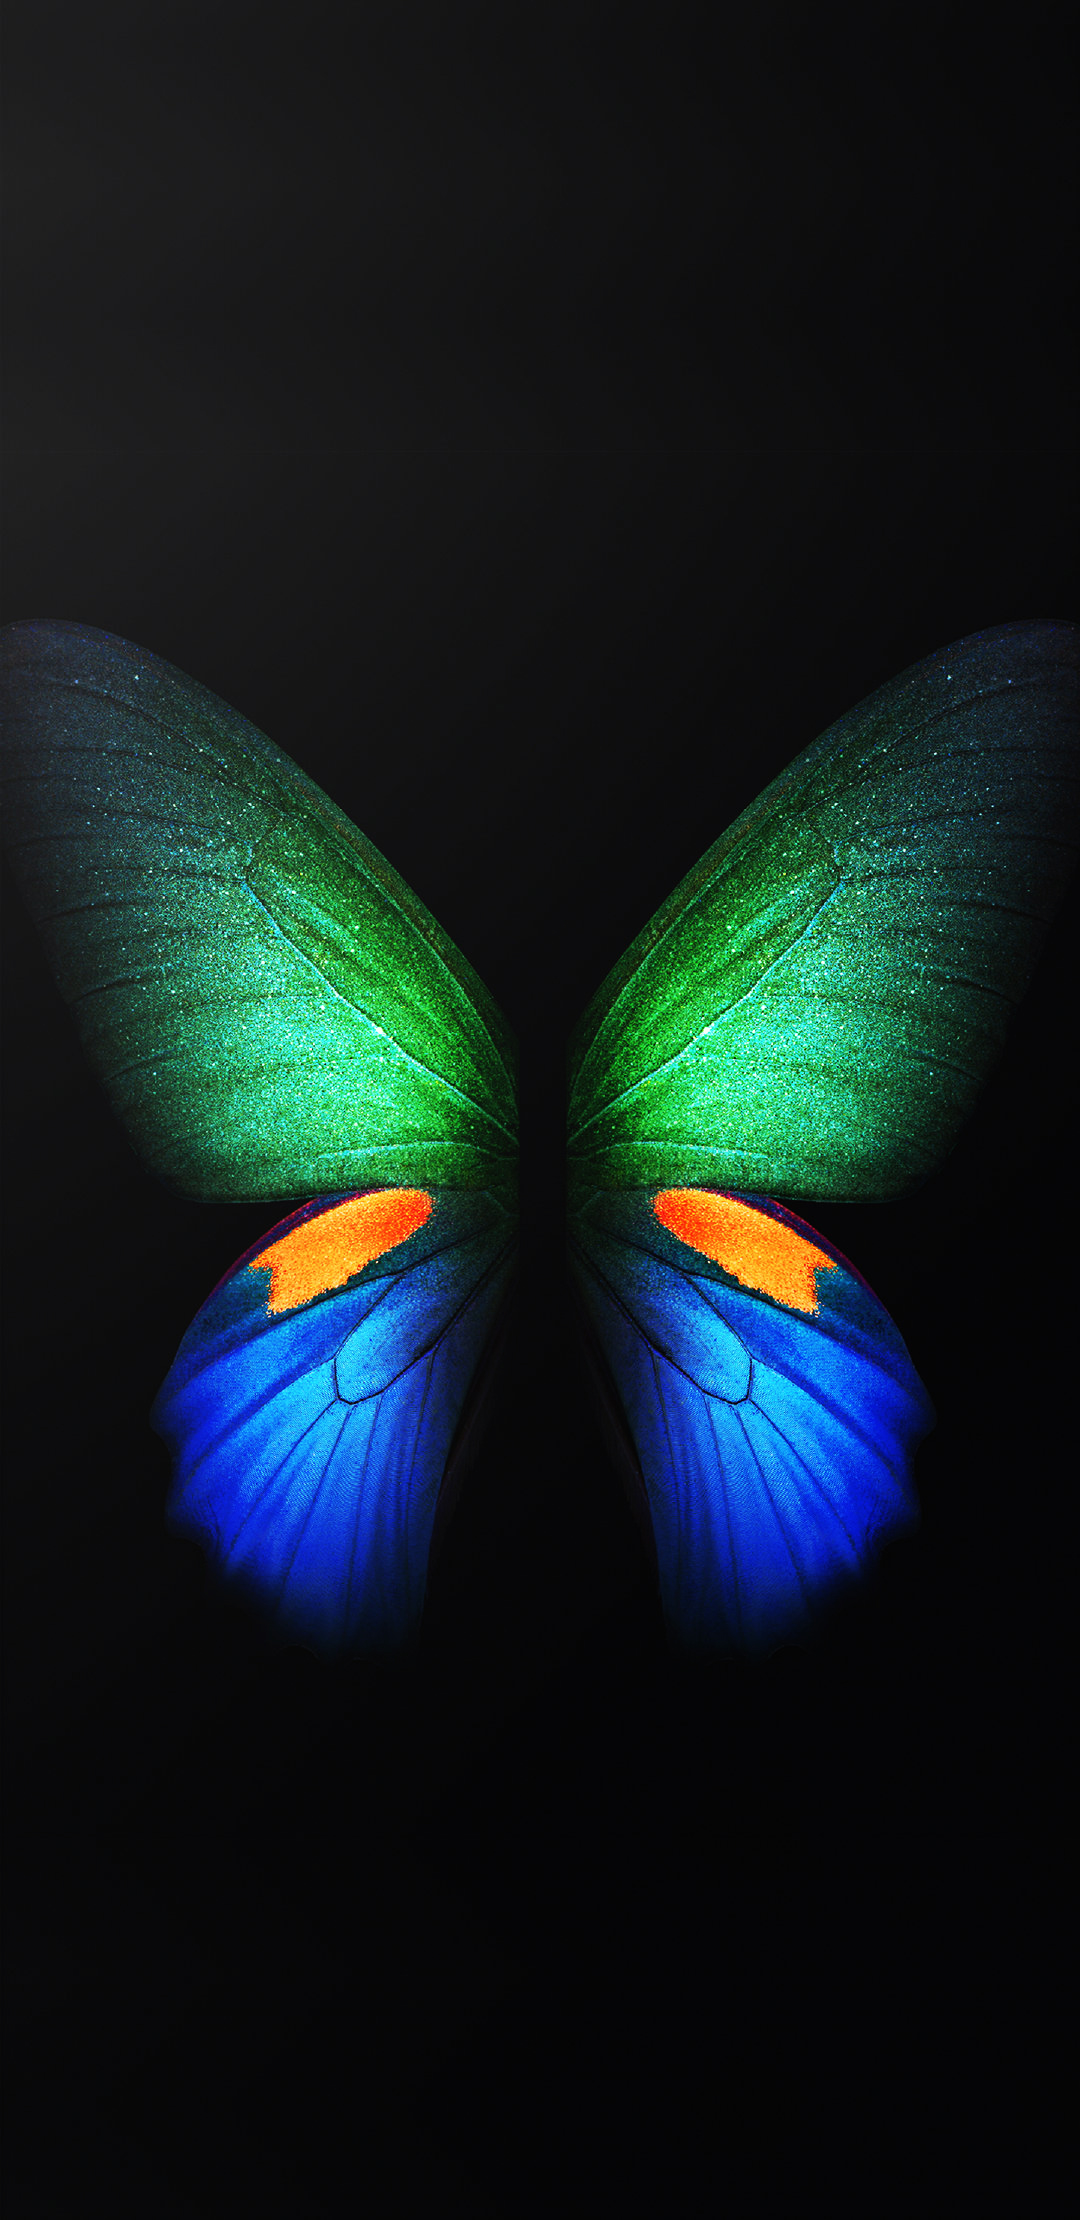 sfondi samsung stock,la farfalla,insetto,blu,verde,falene e farfalle